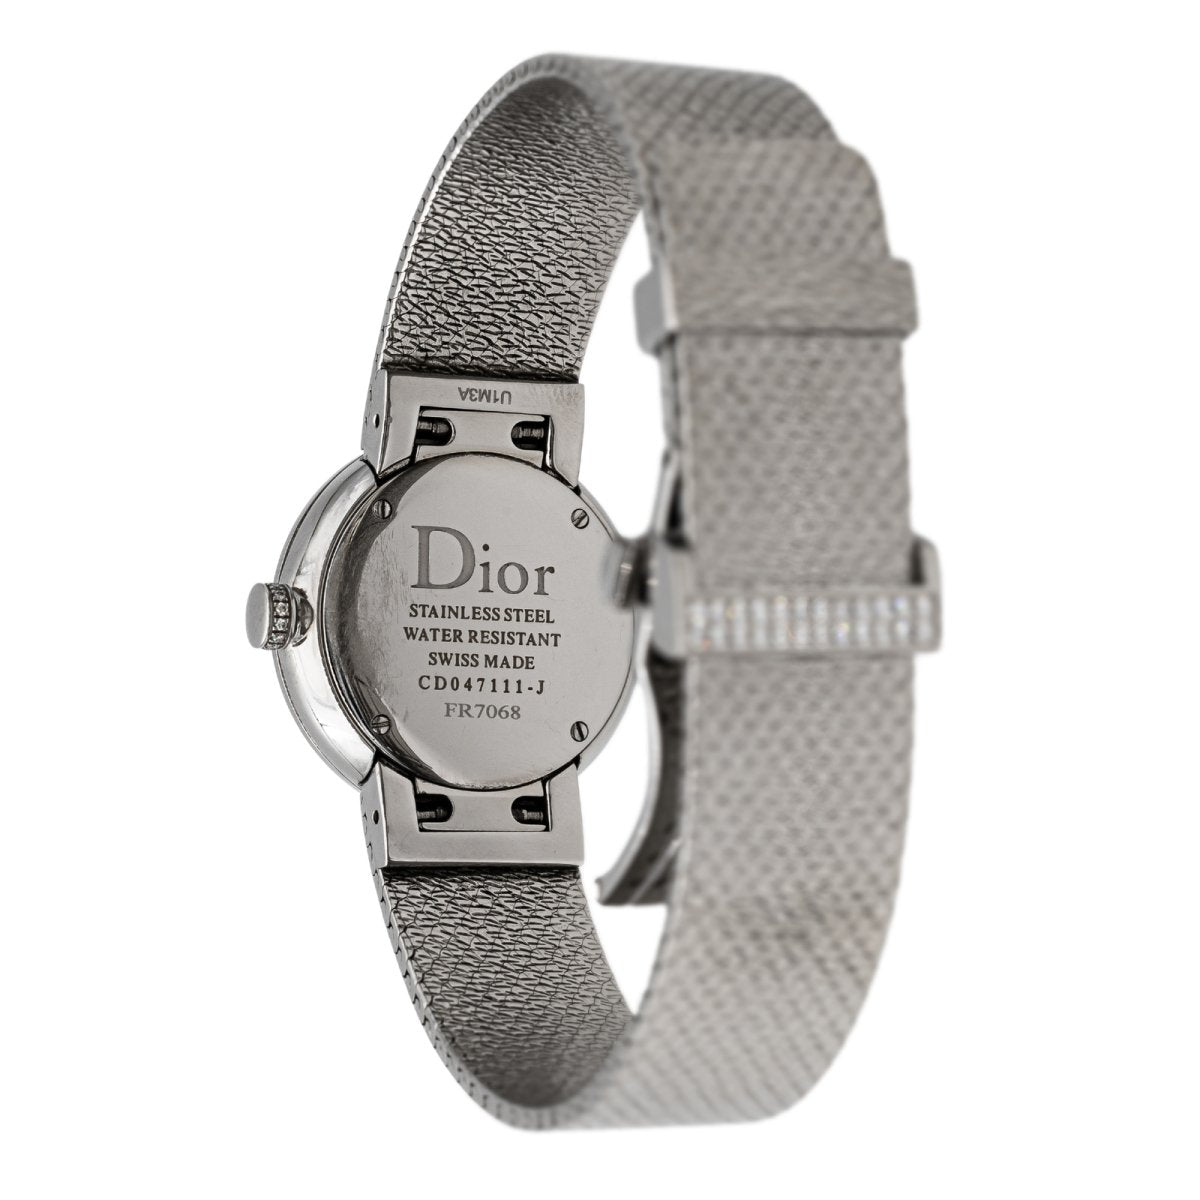 CHRISTIAN DIOR Quartz analog Christian Dior Quartz 45-204 Men's watch | eBay